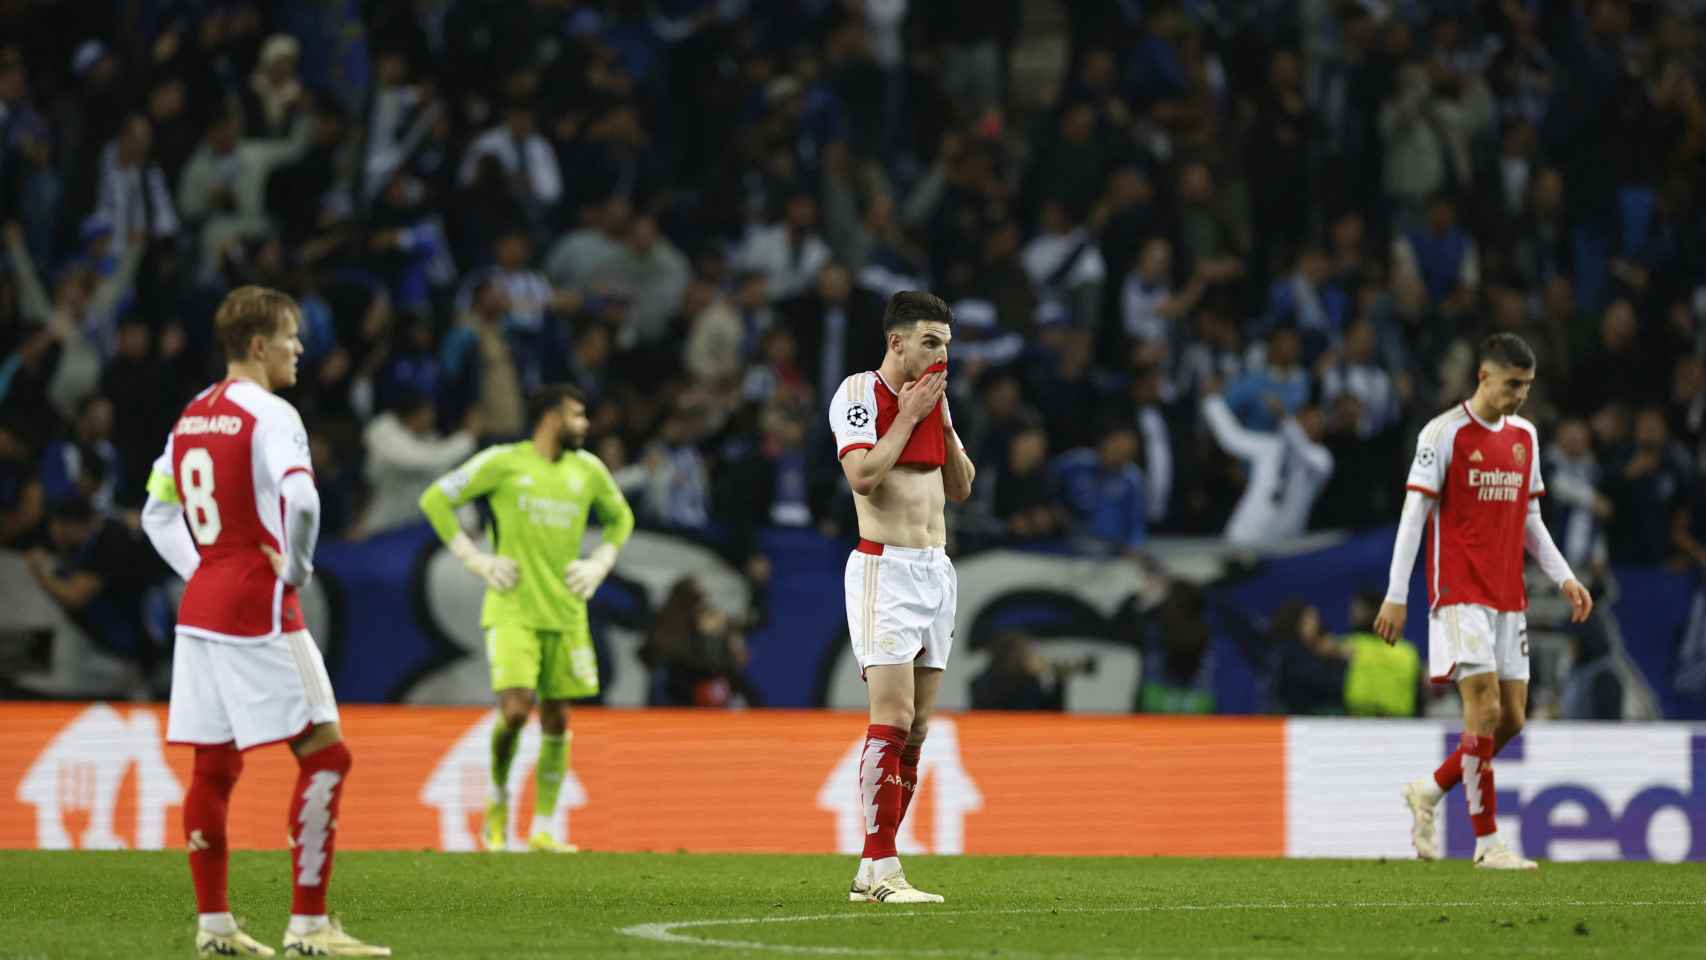 Los jugadores del Arsenal, cabizbajos tras el gol del Oporto.